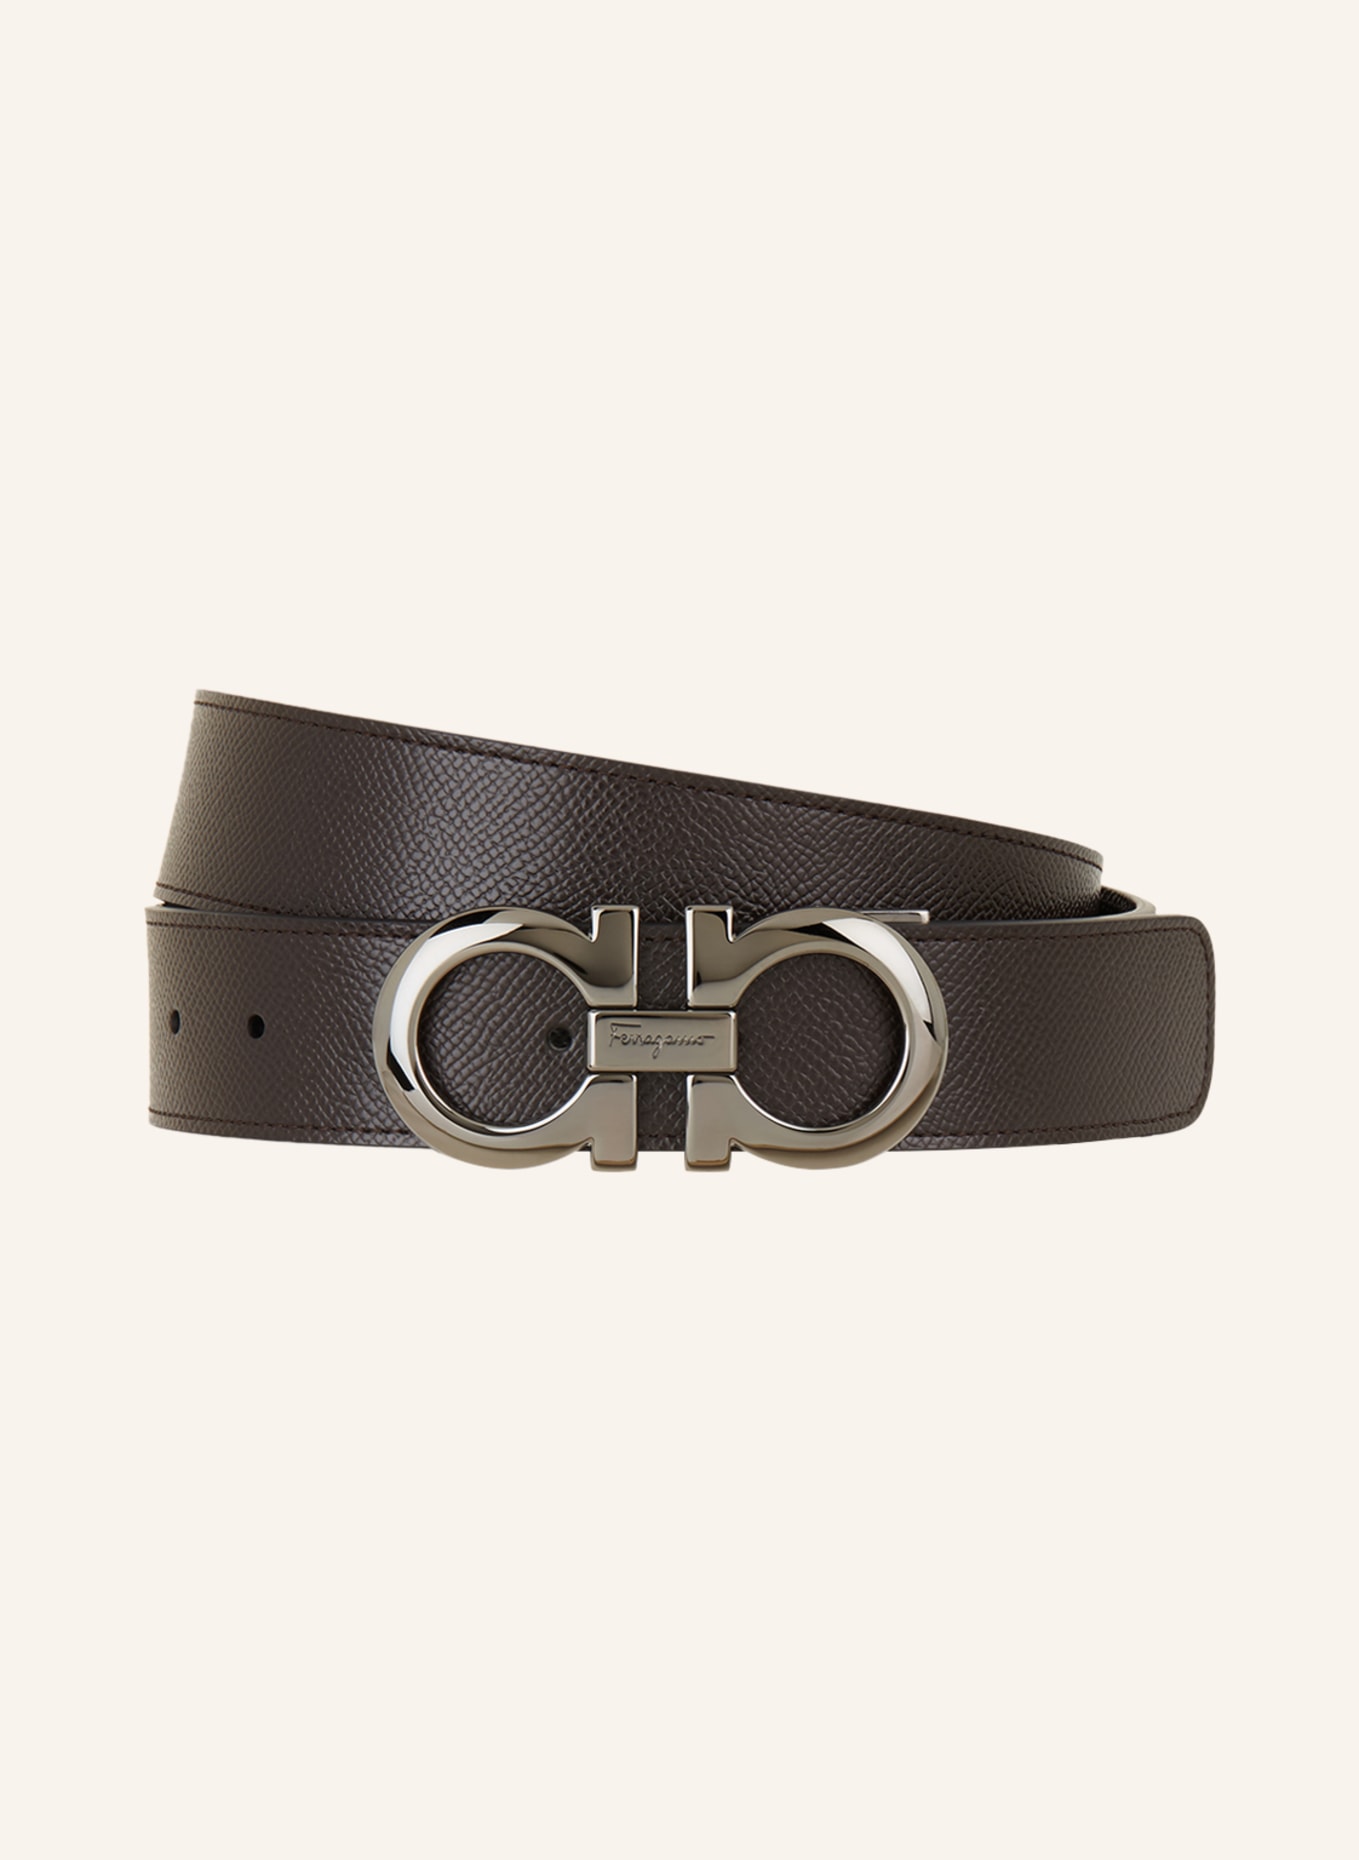 FERRAGAMO Reversible leather belt, Color: BLACK/ DARK BROWN (Image 1)